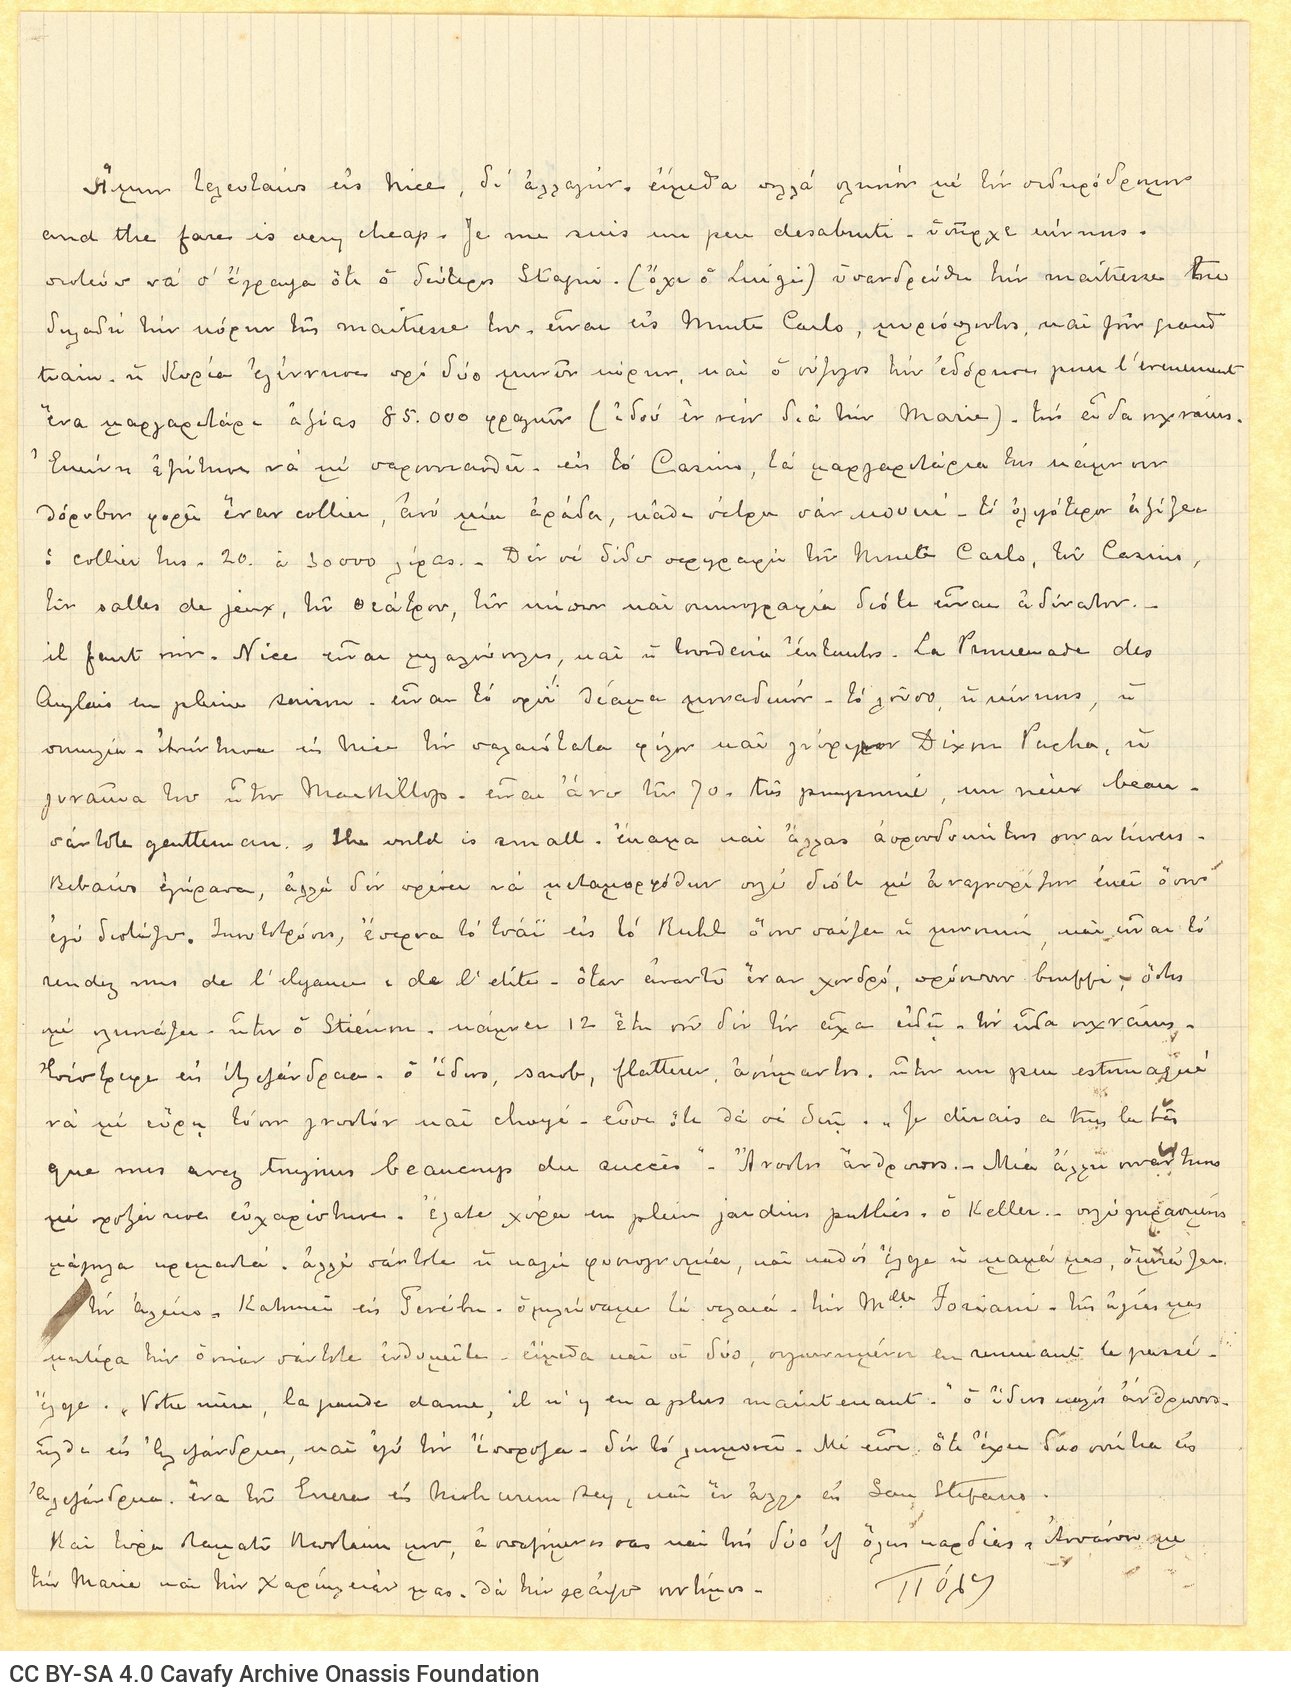 Χειρόγραφη επιστολή ημερολογιακού χαρακτήρα του Παύλου Καβάφη προς